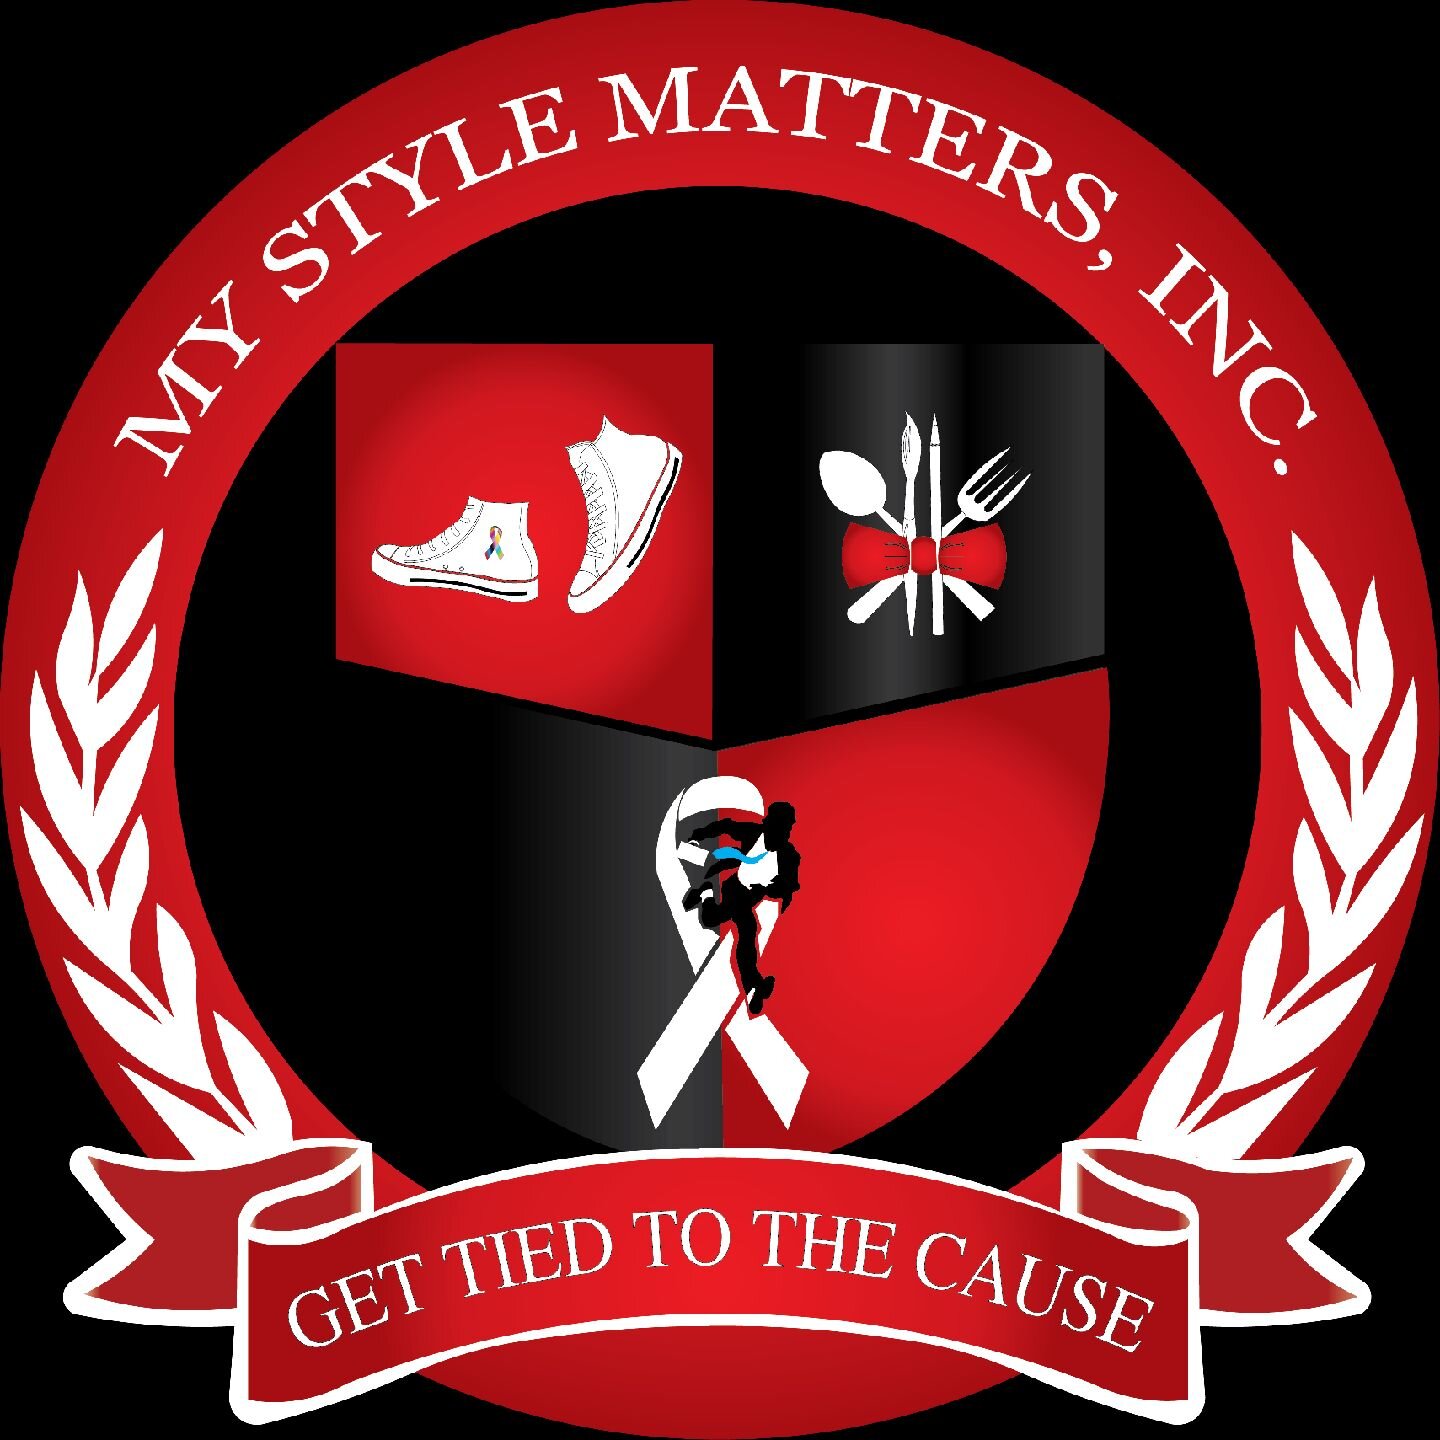 my style matters logo.jpeg